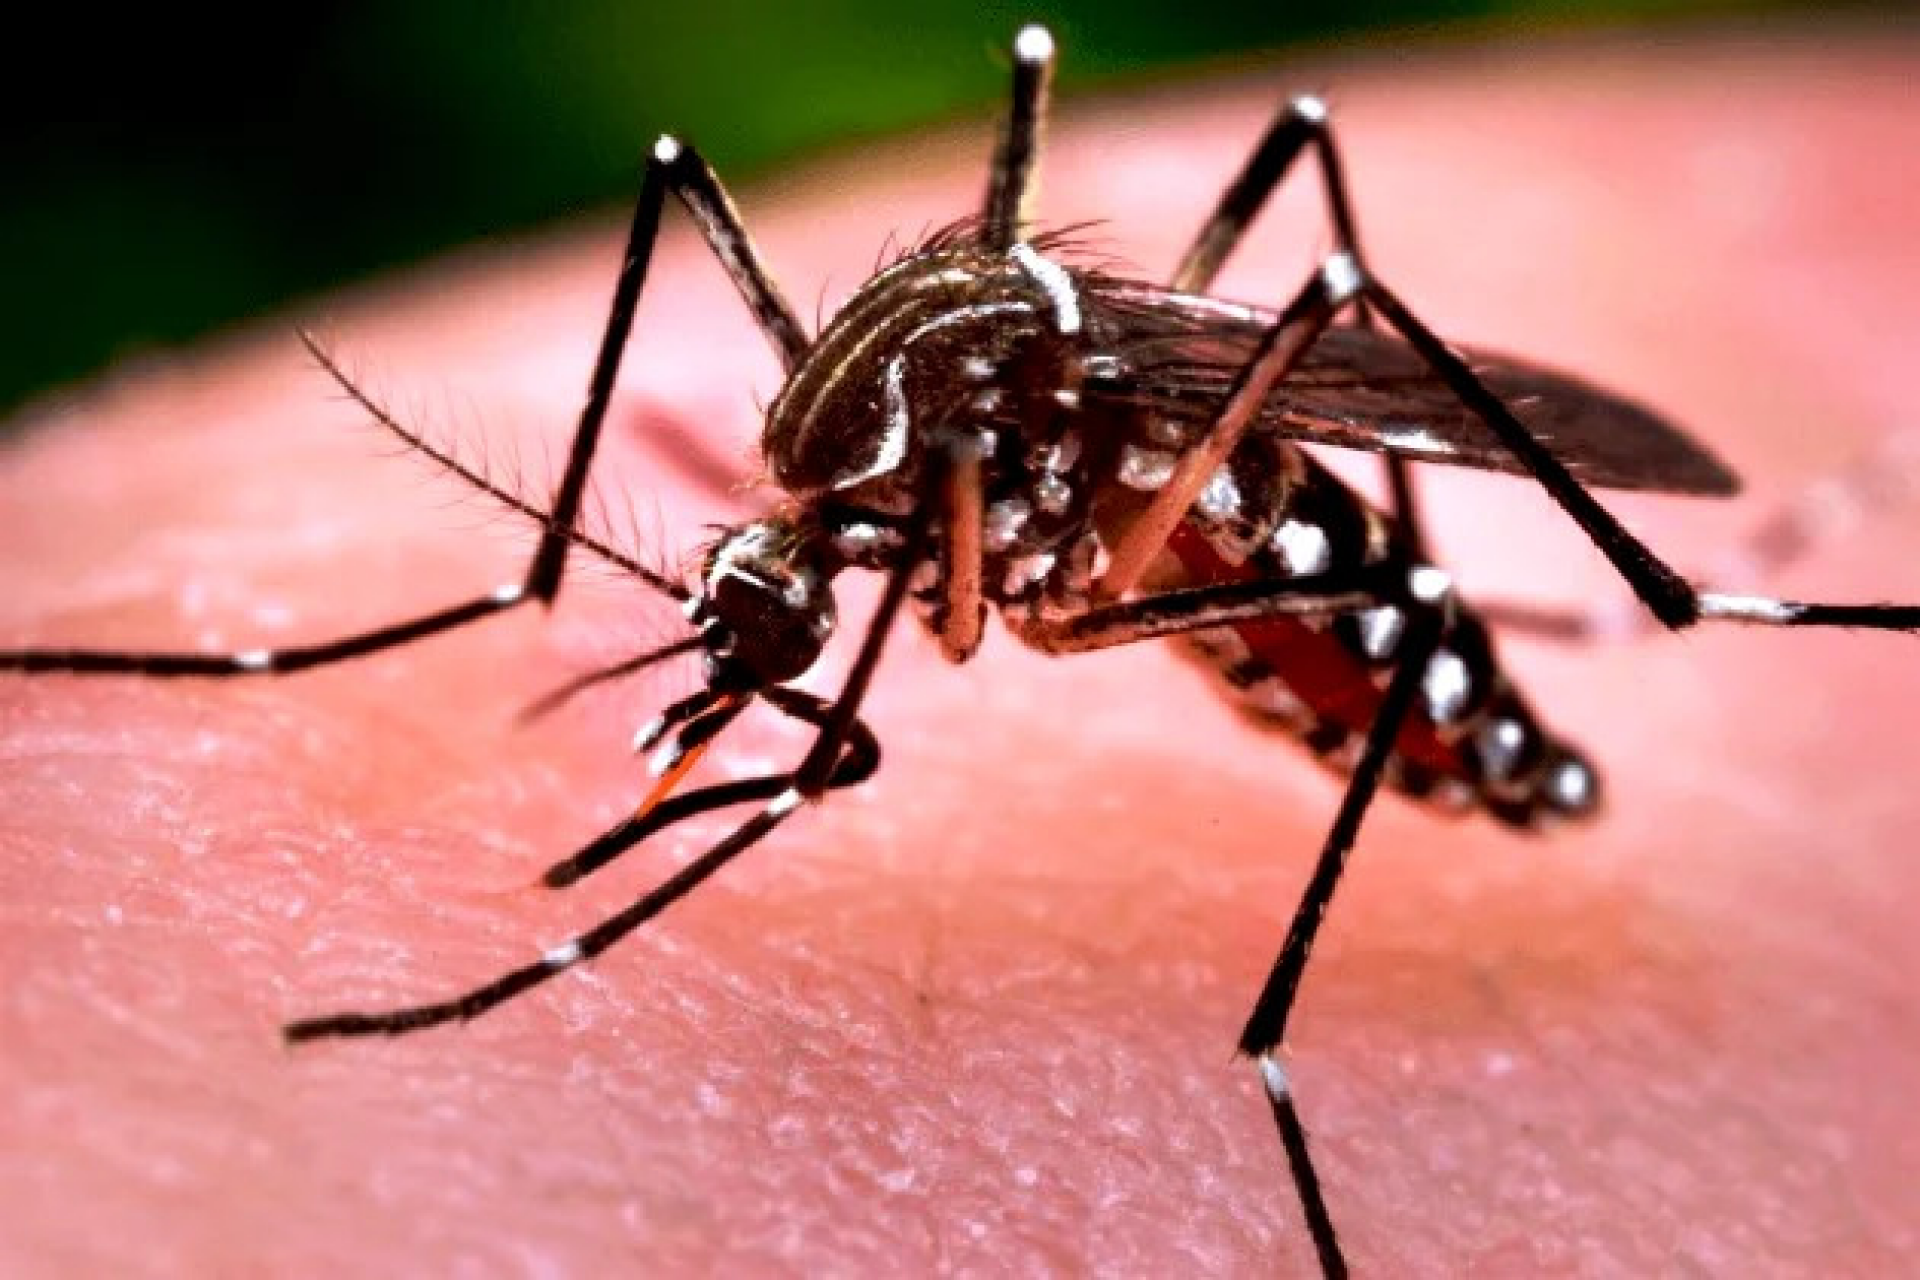 Embaixada dos EUA alerta viajantes sobre dengue no Brasil